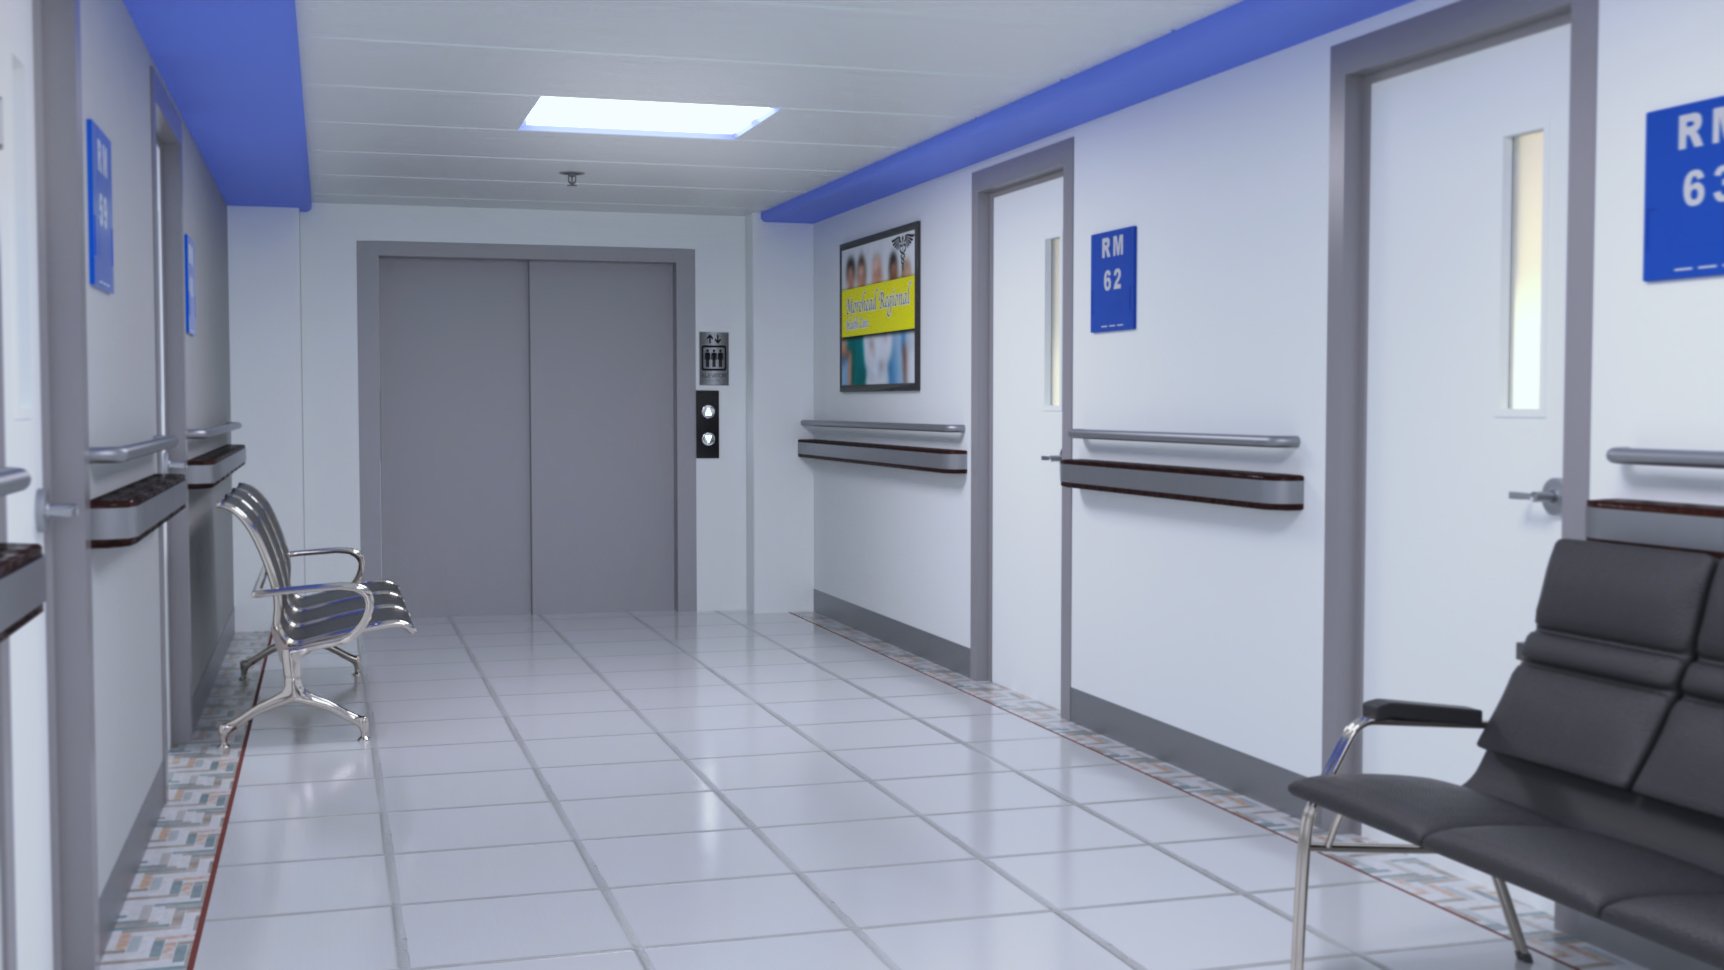 Hospital Hallway by: Digitallab3D, 3D Models by Daz 3D